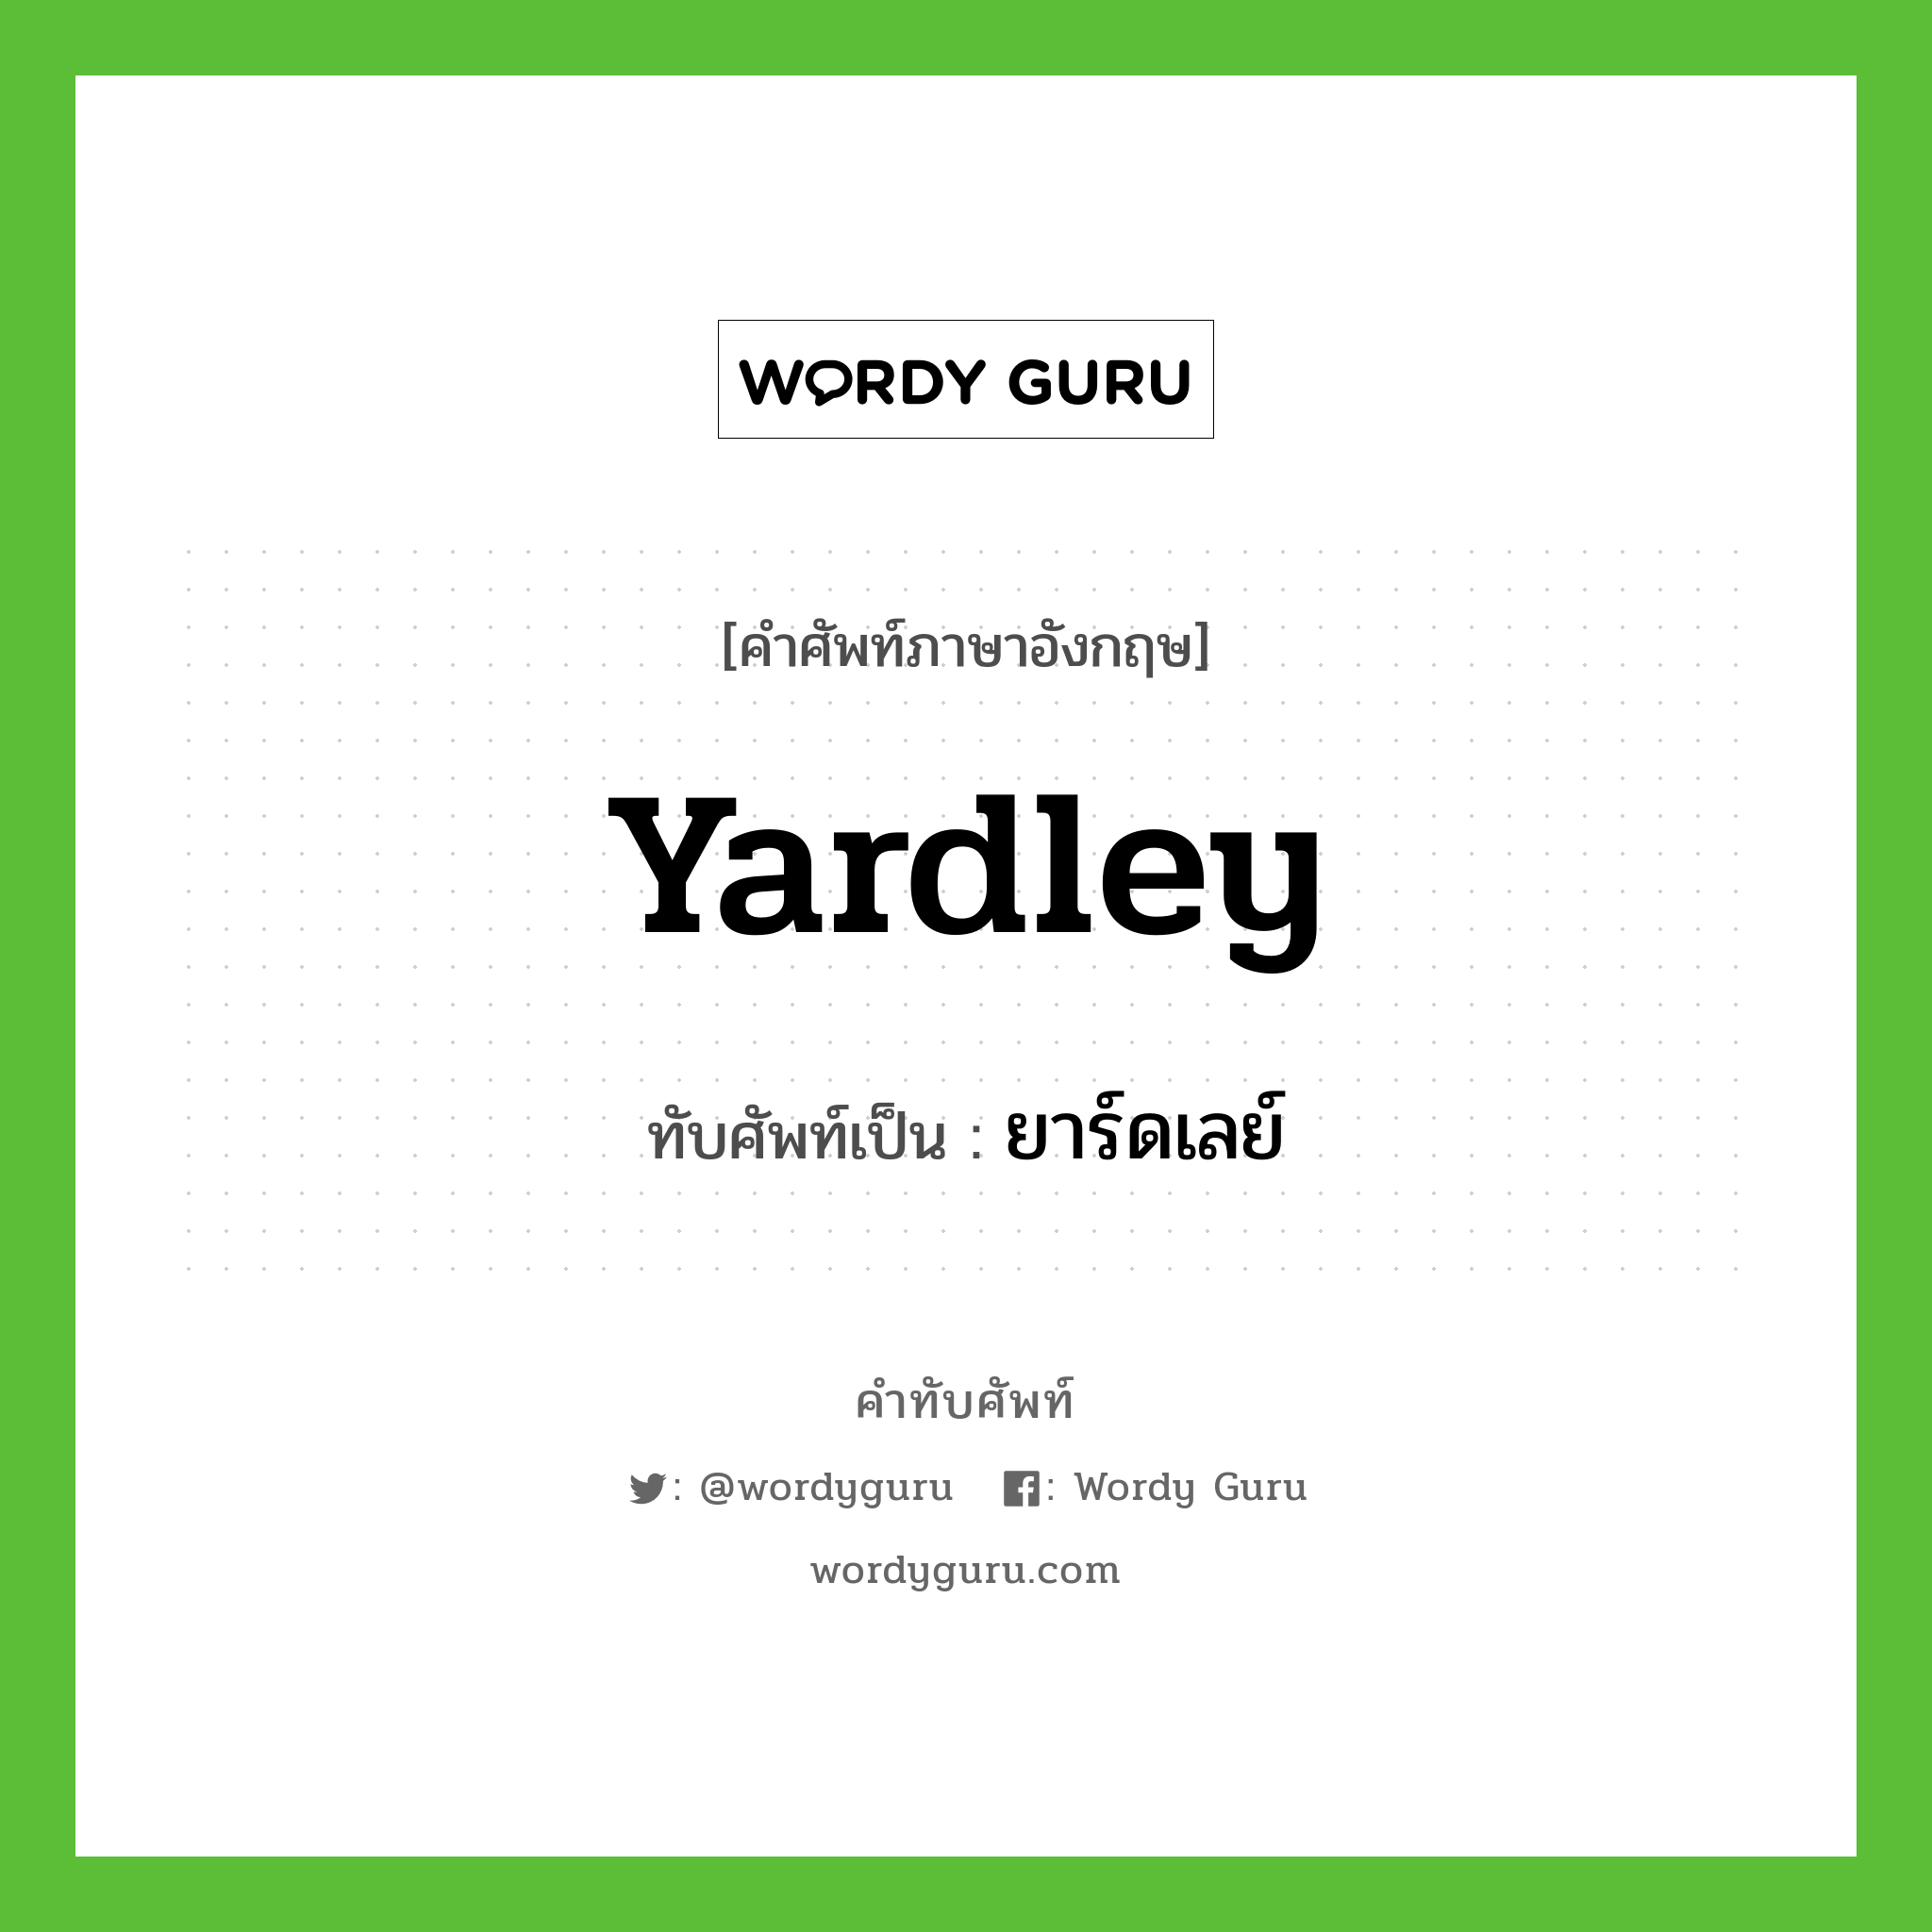 ยาร์ดเลย์ เขียนอย่างไร?, คำศัพท์ภาษาอังกฤษ ยาร์ดเลย์ ทับศัพท์เป็น Yardley